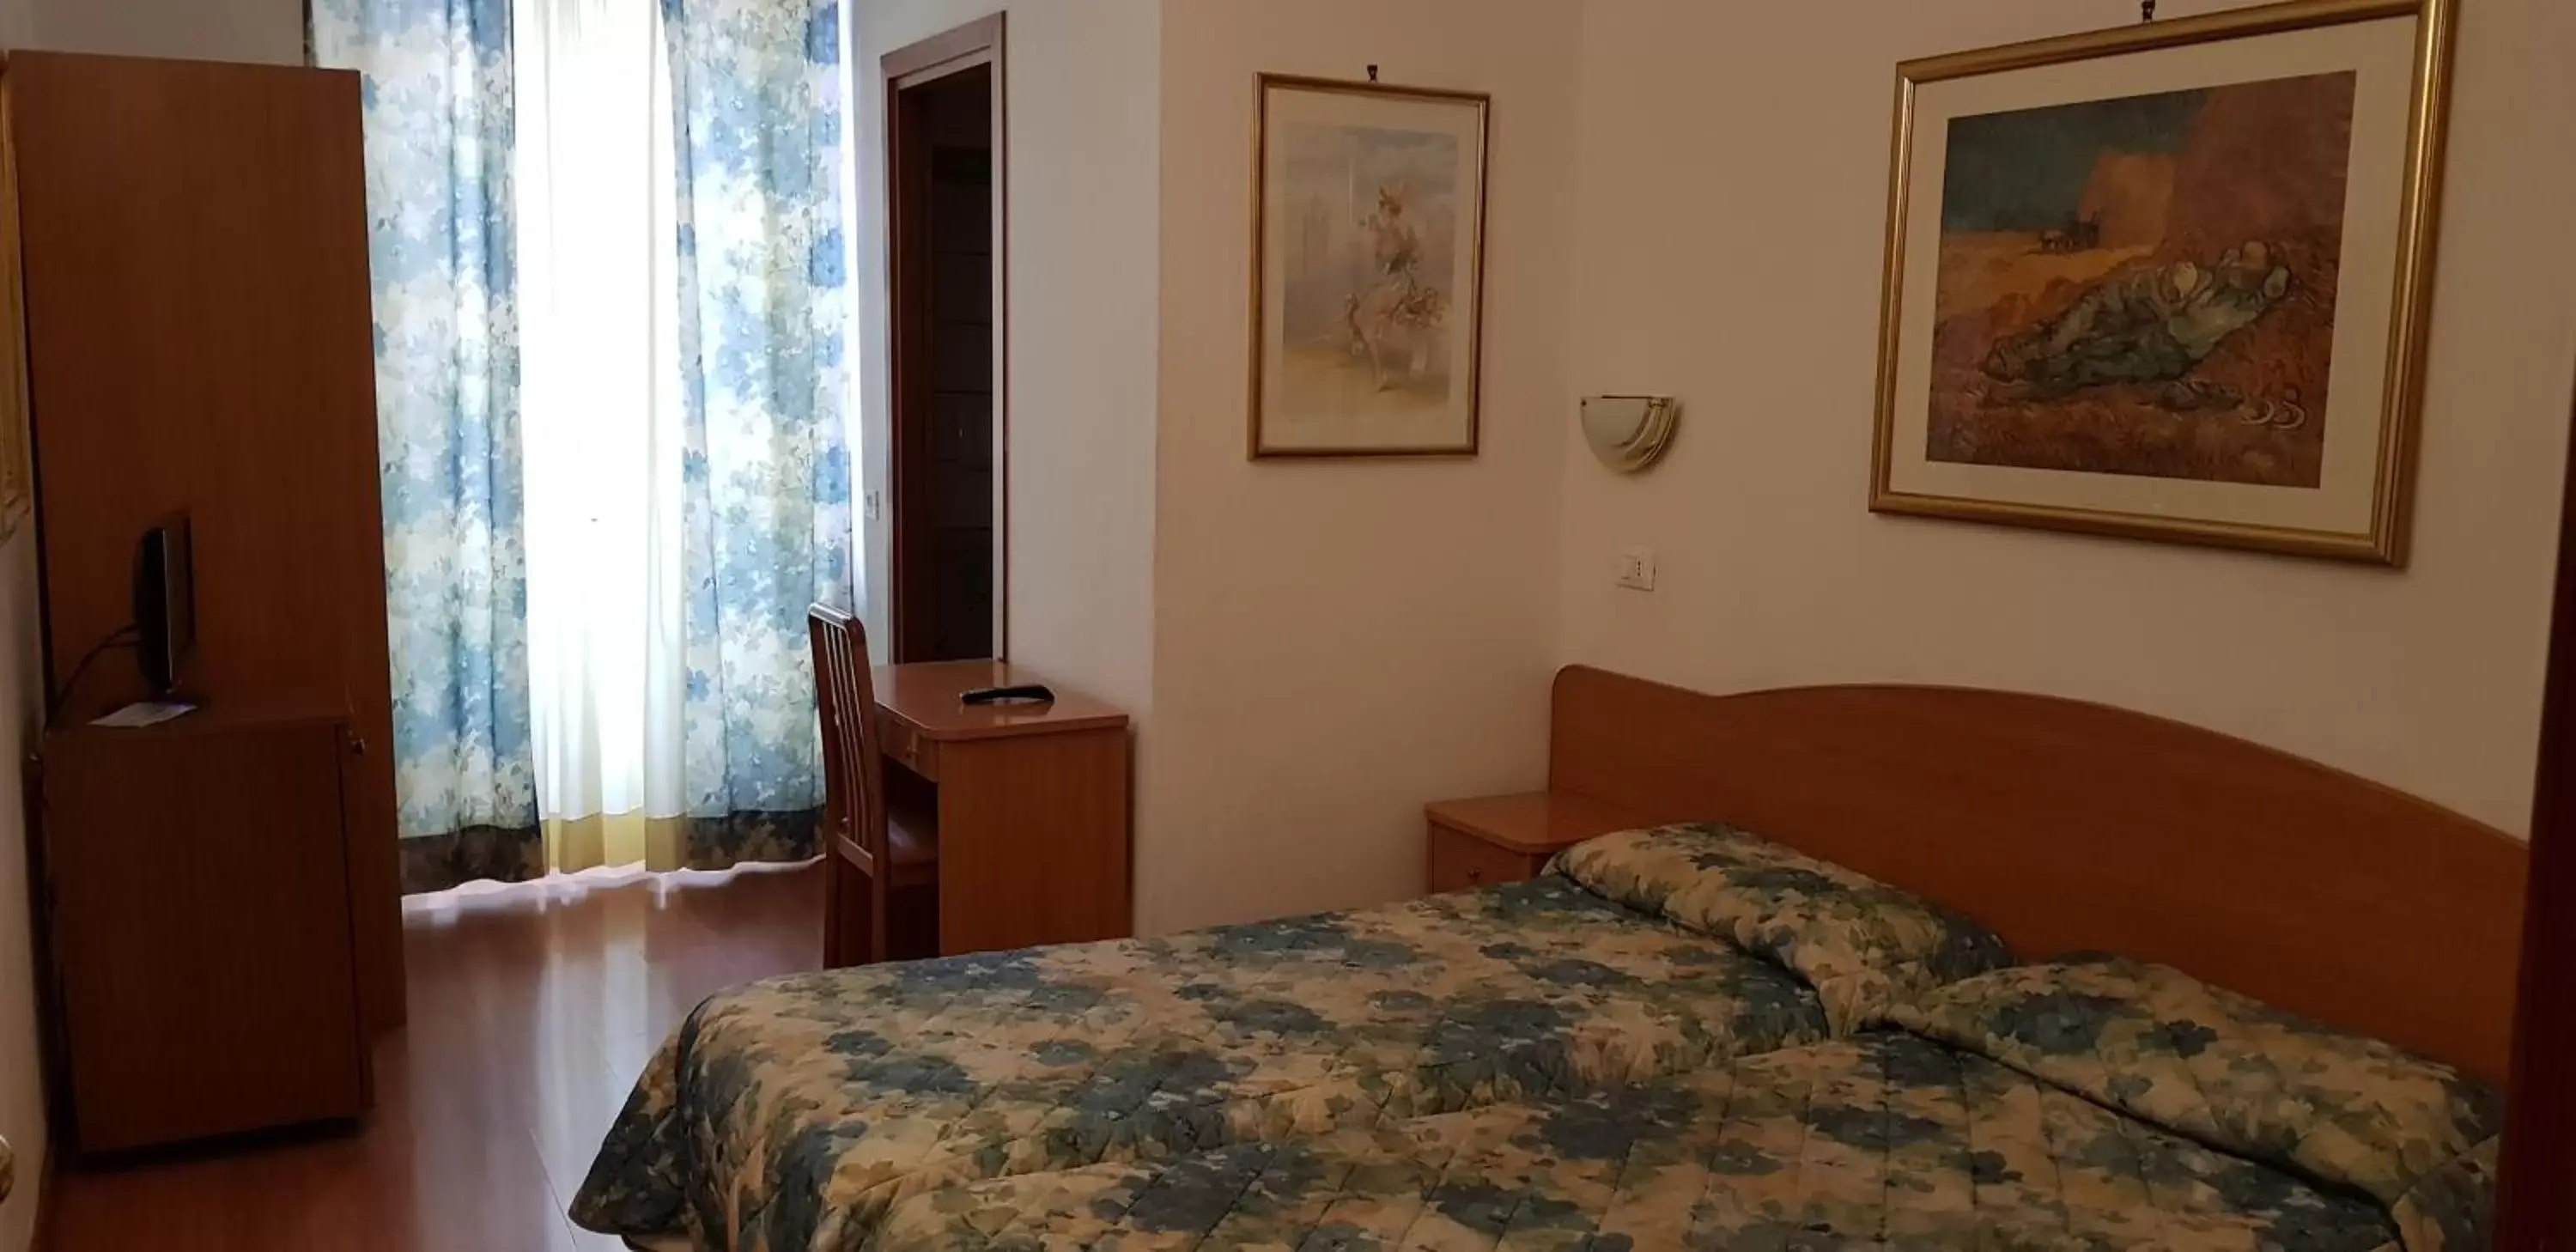 Bed in Hotel Tirreno